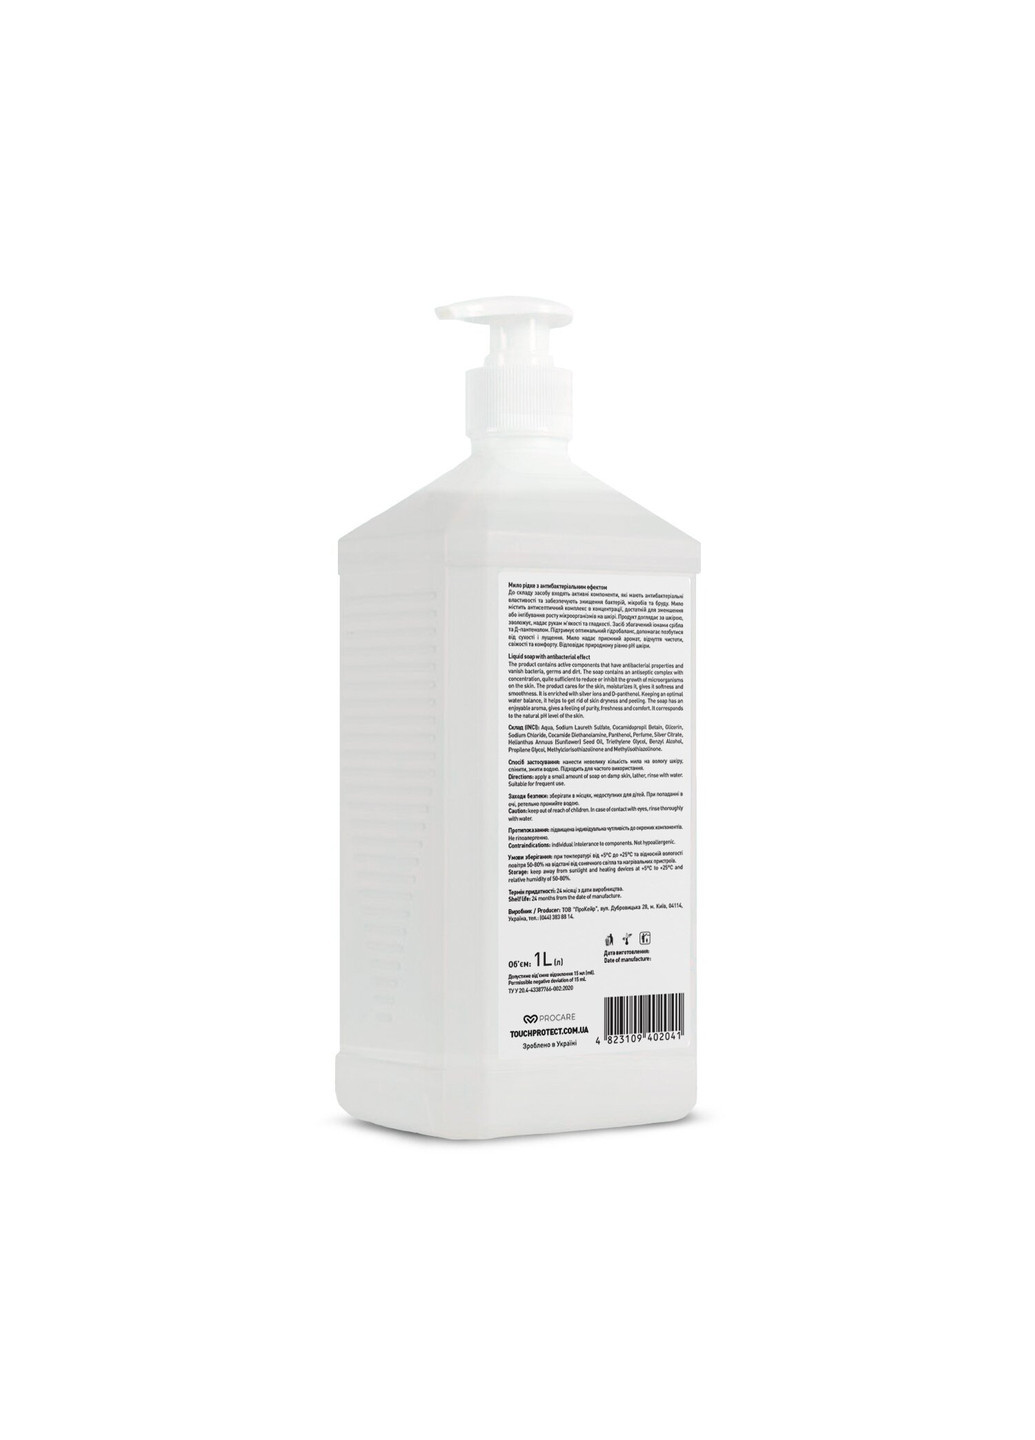 Жидкое мыло с антибактериальным эффектом Ионы серебра-Д-пантенол 1000 мл Touch Protect (251848018)